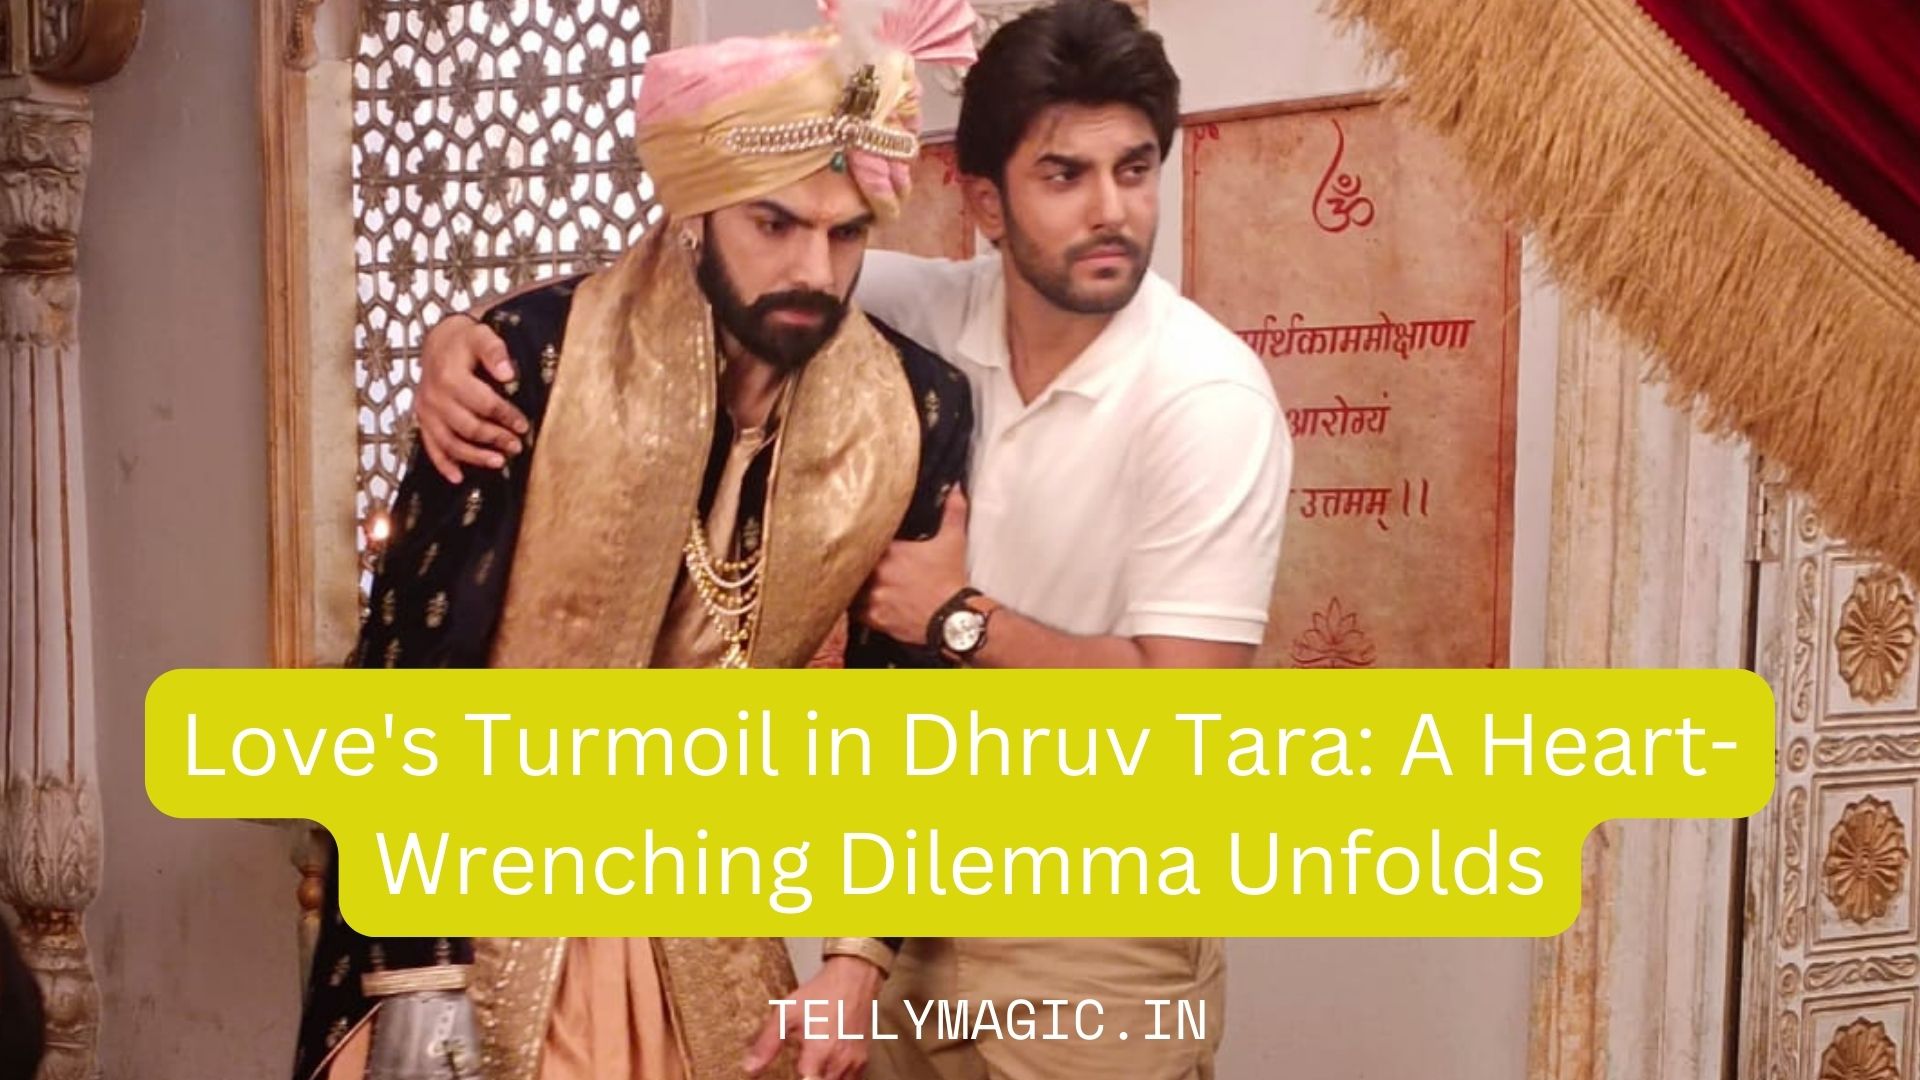 Love’s Turmoil in Dhruv Tara: A Heart-Wrenching Dilemma Unfolds